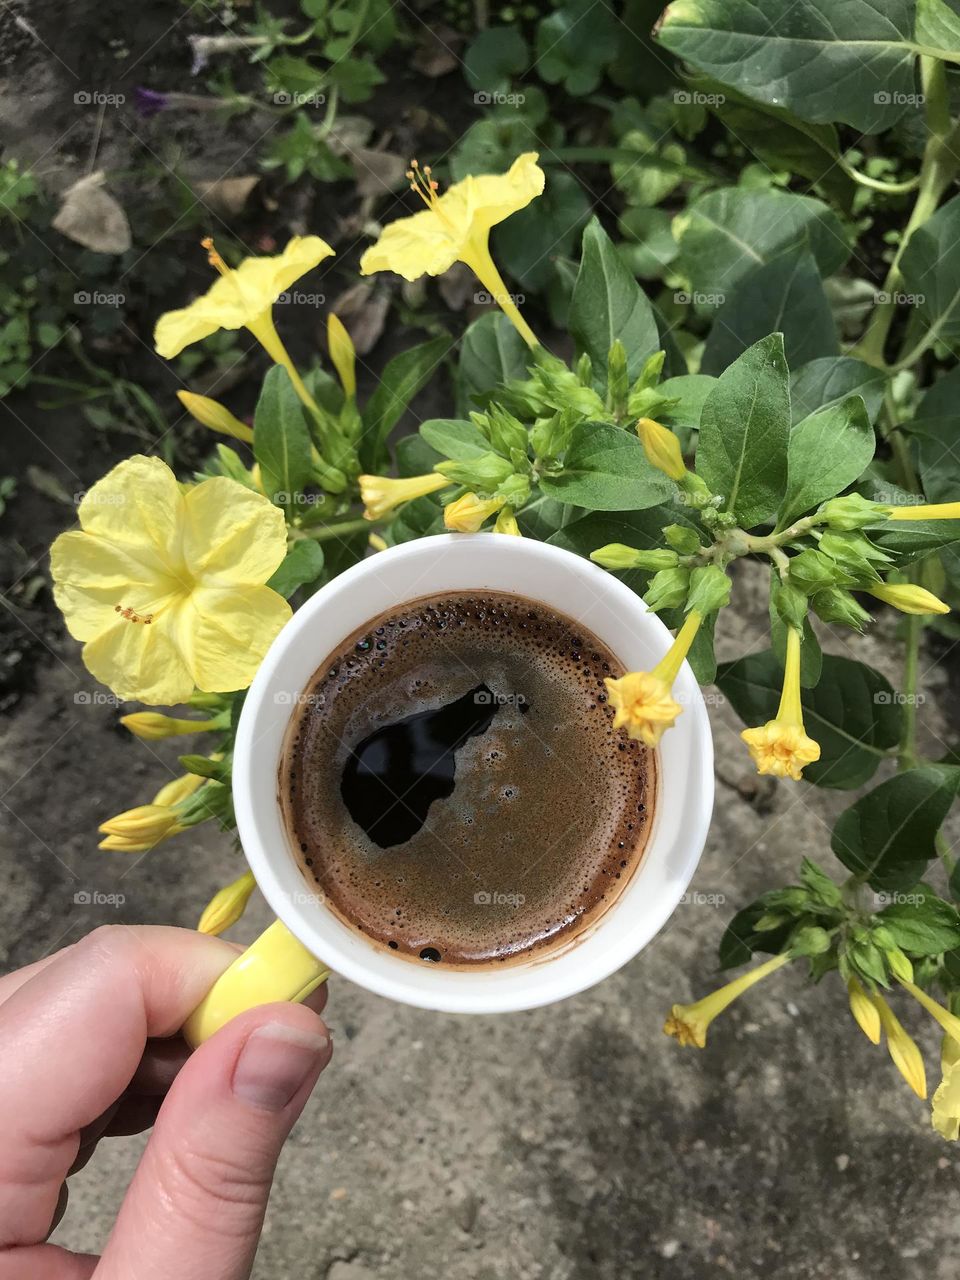 Autumn and black coffee to enjoy this season